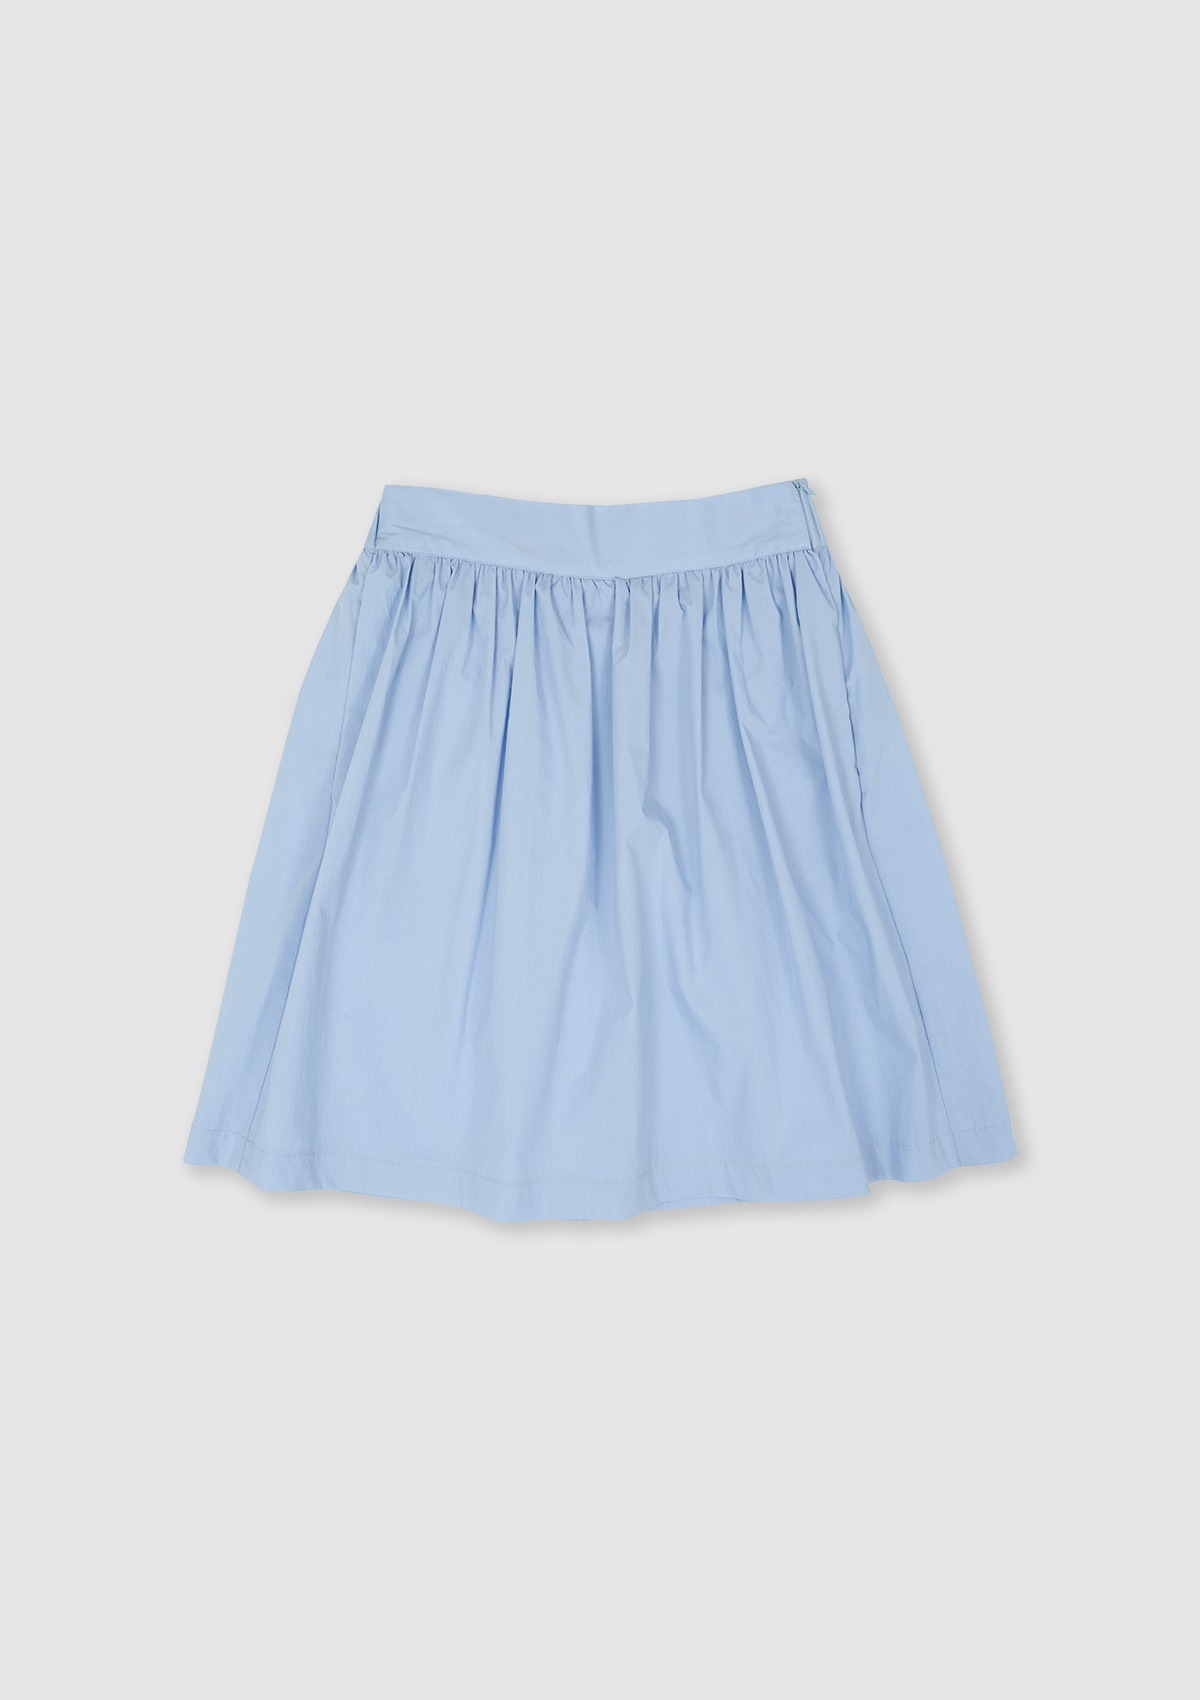 Pocari Skirt (Sora)